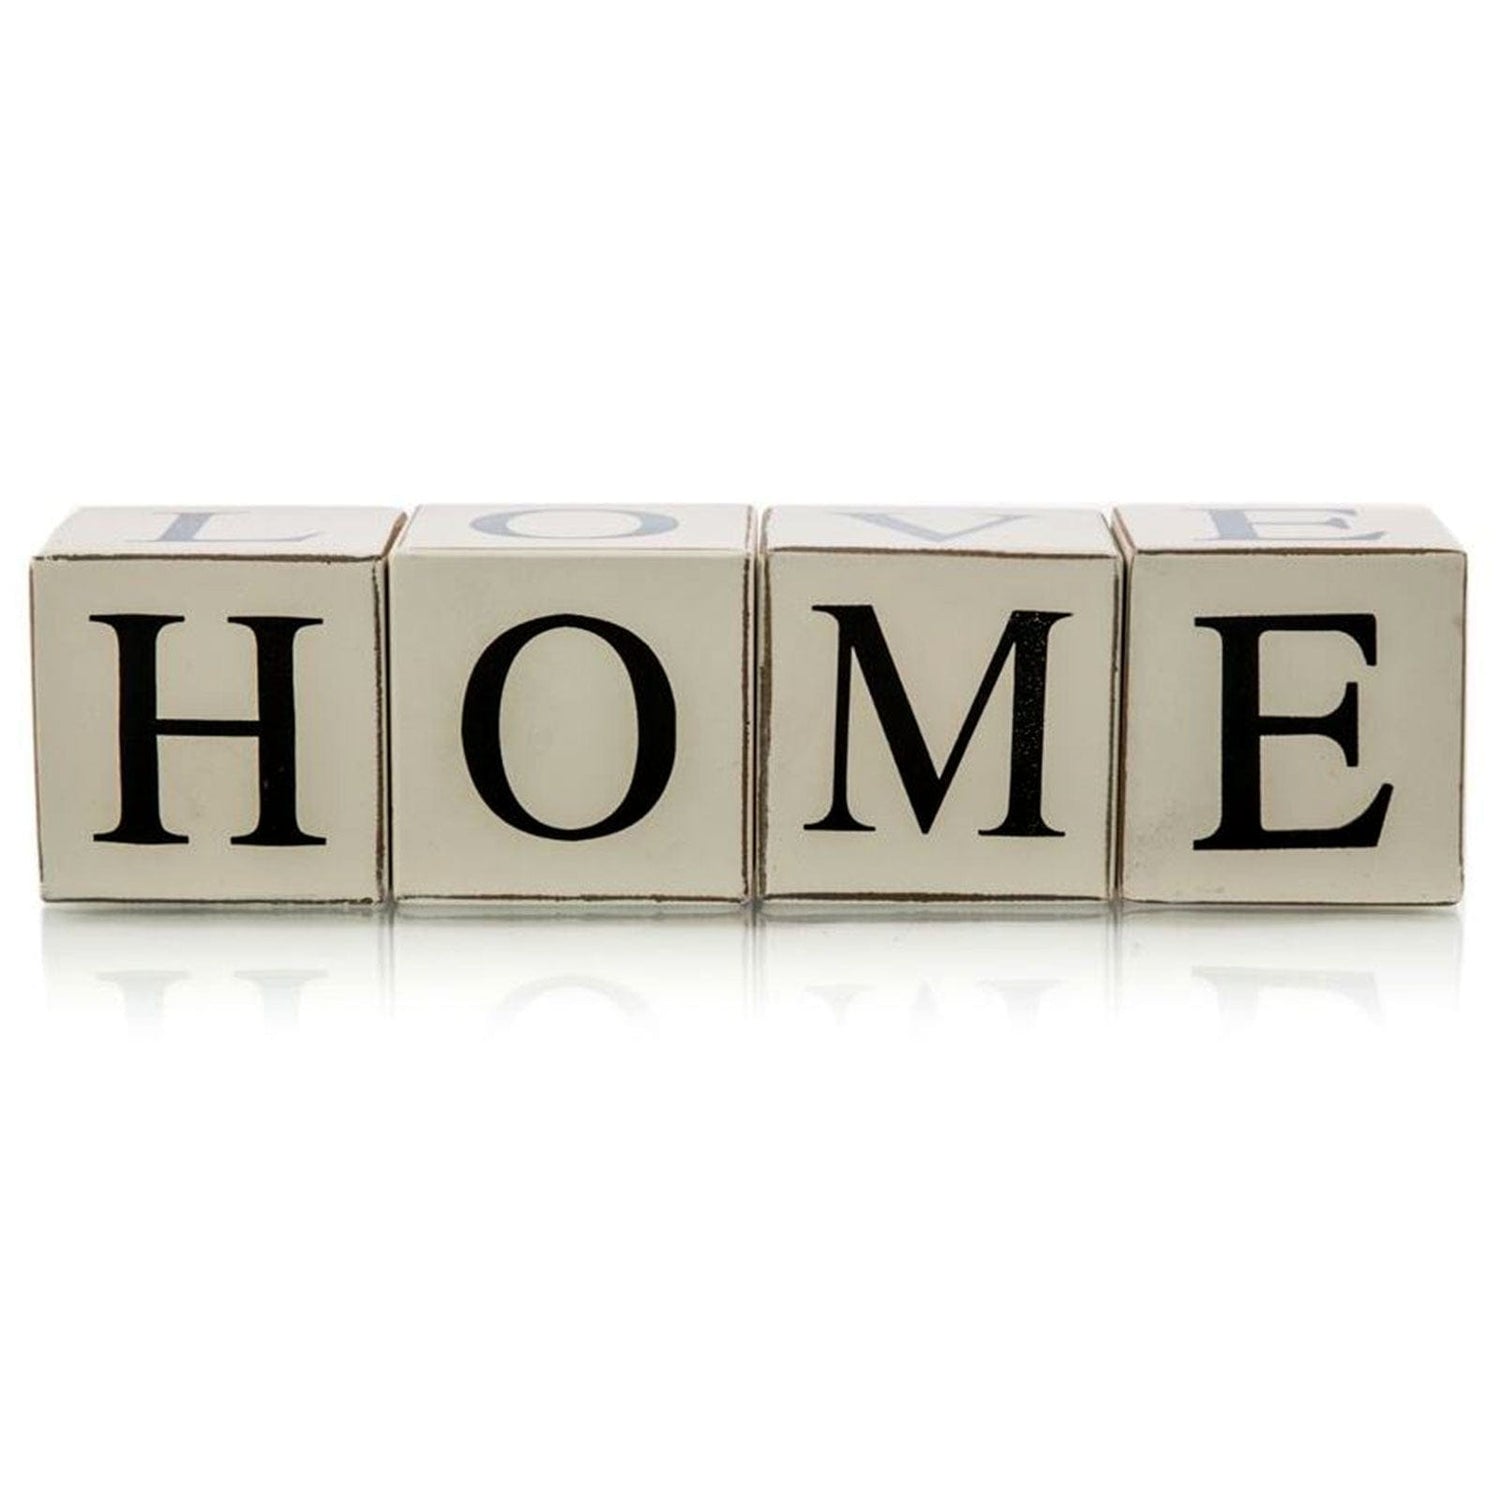 LOVE HOME Wooden Letter Blocks - White.